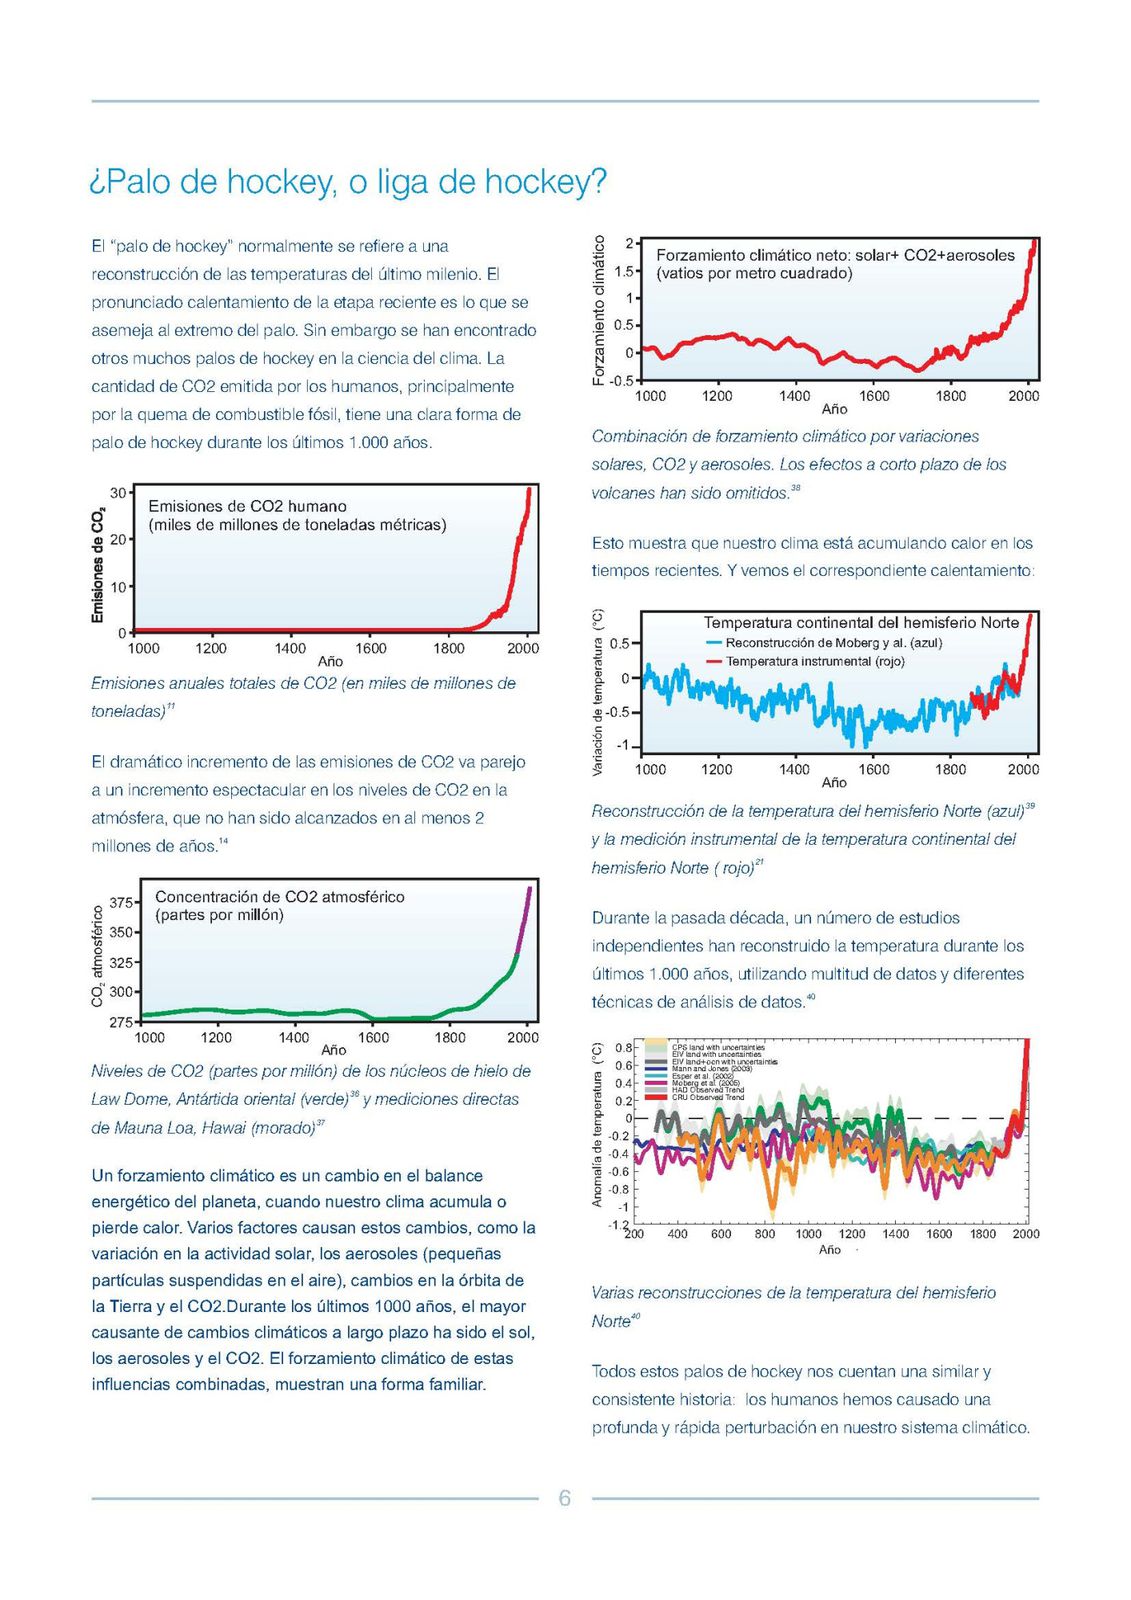 Guia cientifica contra el escepticismo climatico Página 08